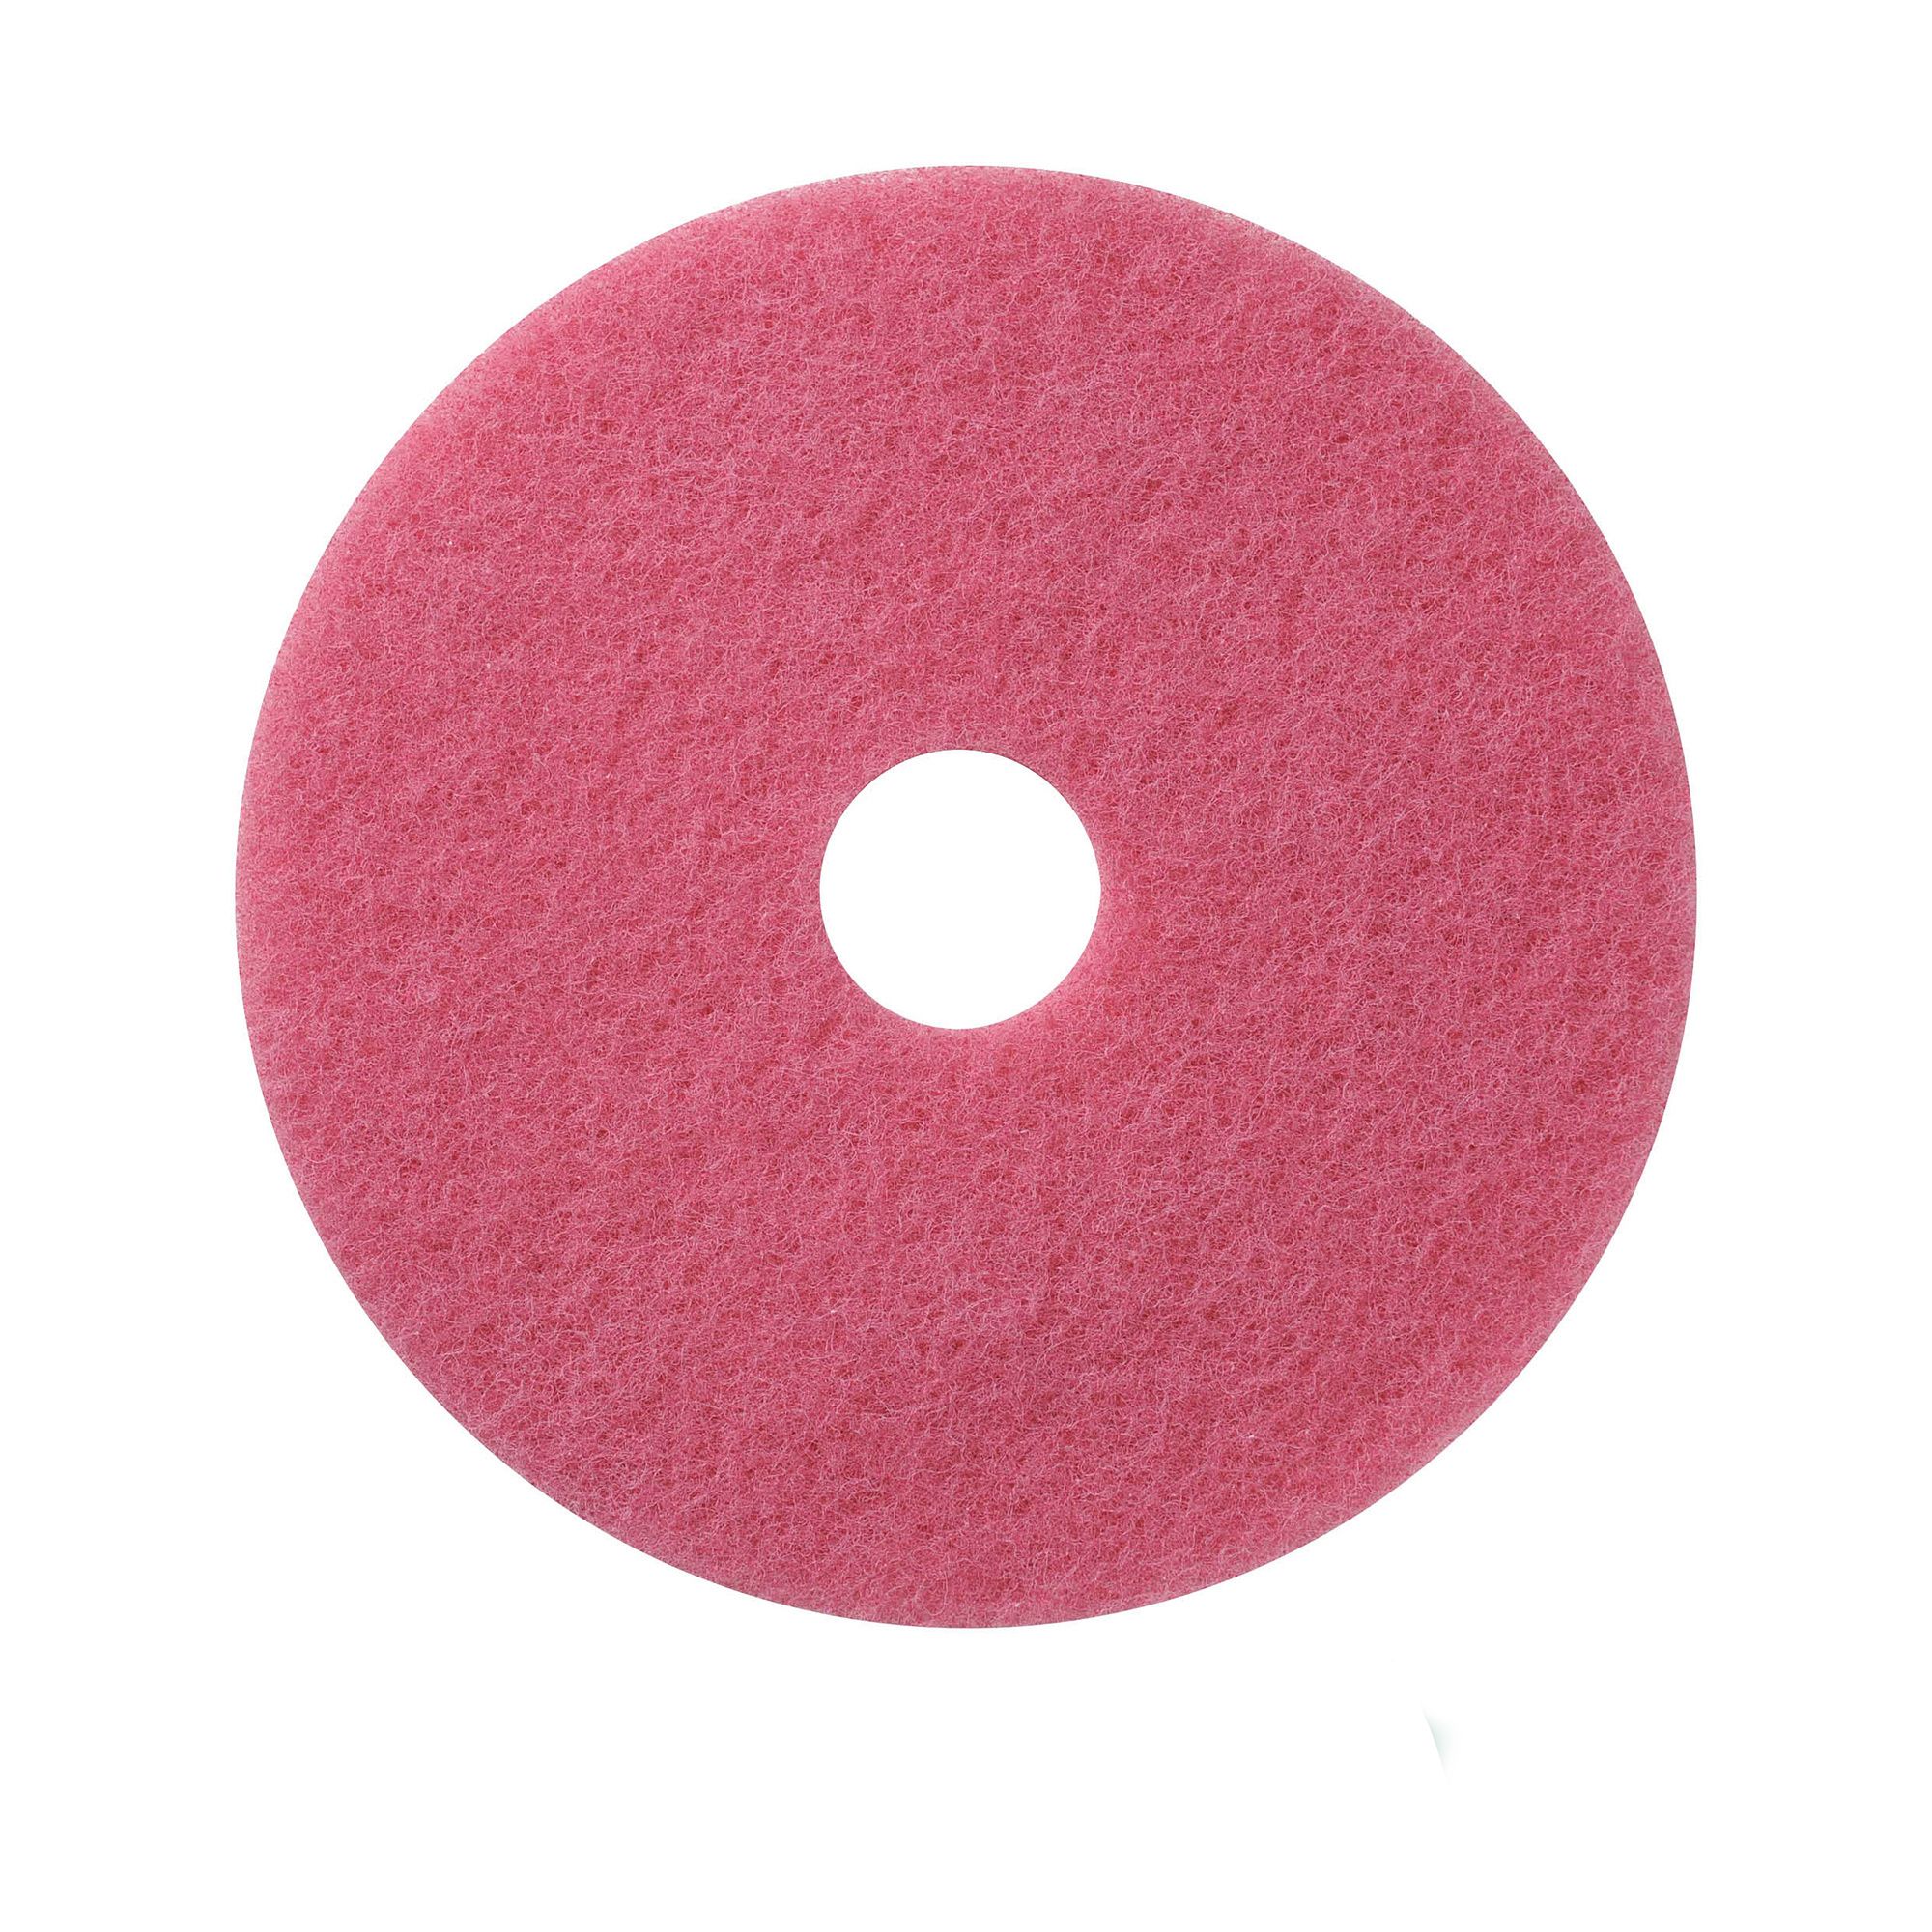 NuPad roze (schrobben), per 5 stuks, 11 inch / 280 mm